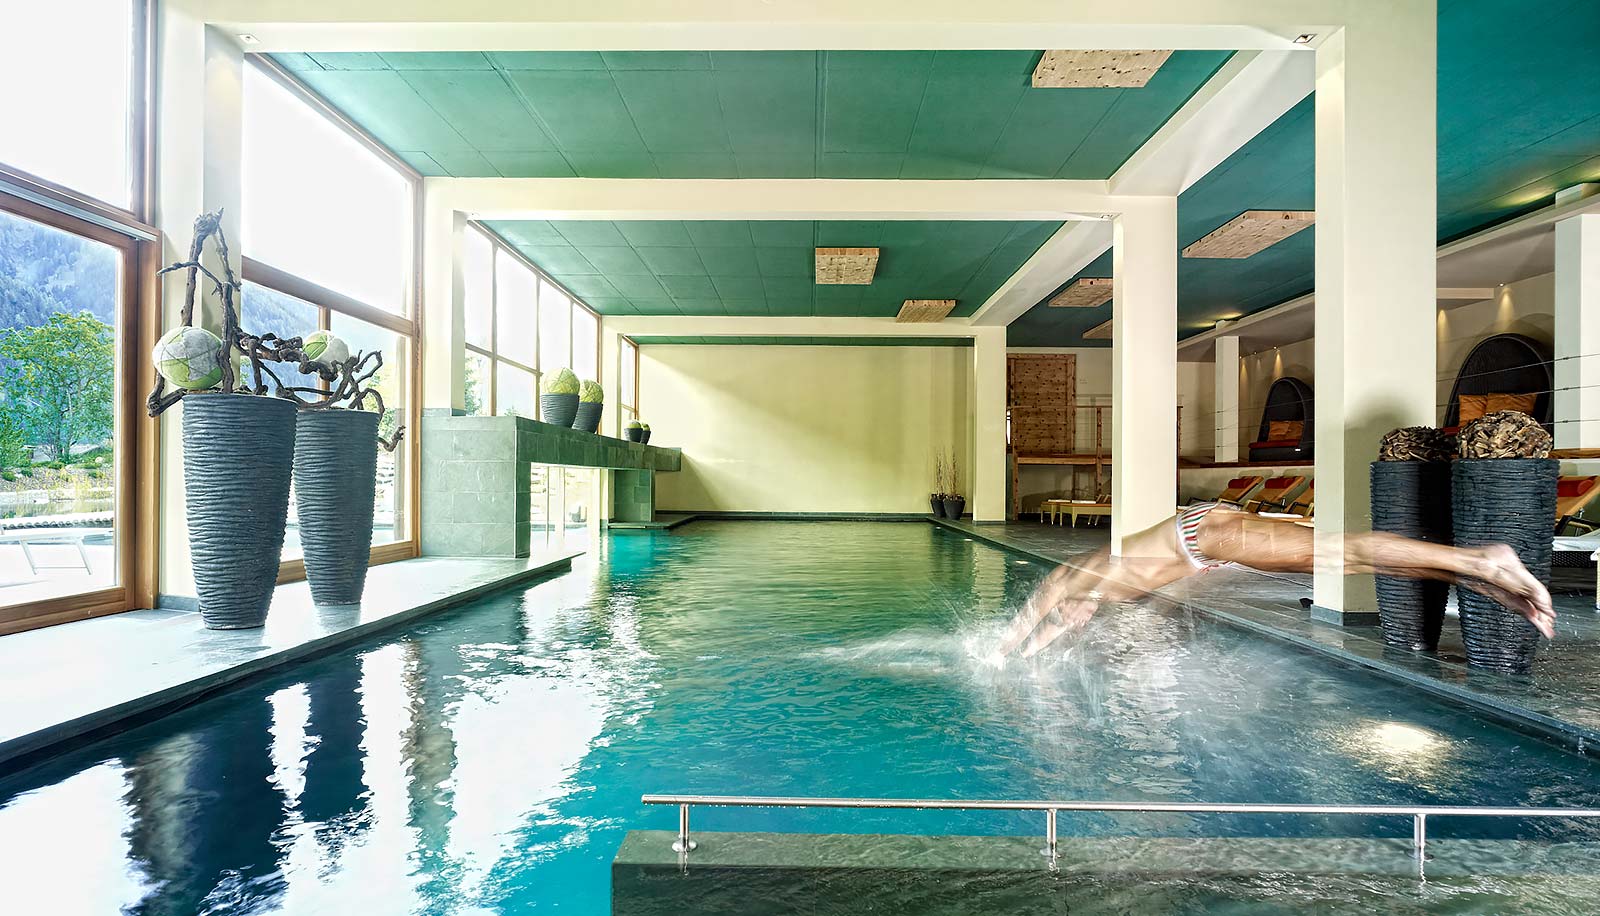 Ein Schwimmer springt in den Indoor-Pool des Arosea Life Balance Hotels im Ultental